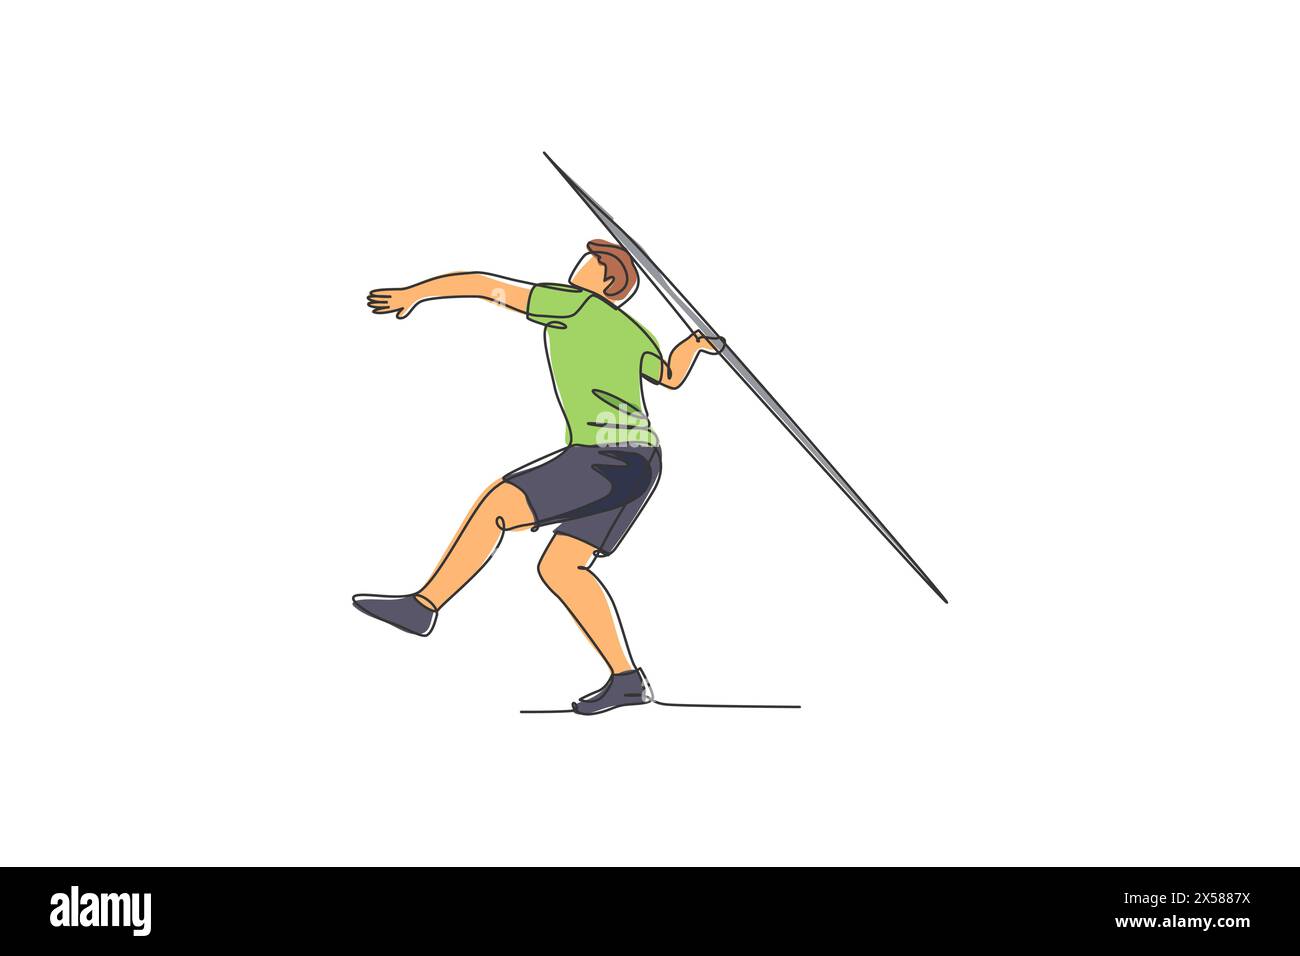 Eine einzelne Linie Zeichnung der jungen energetischen Mann Übung, die Speerwurf zum Zielbereich Grafik-Vektor-Illustration zielt. Gesunder Lebensstil sportlich sp Stock Vektor